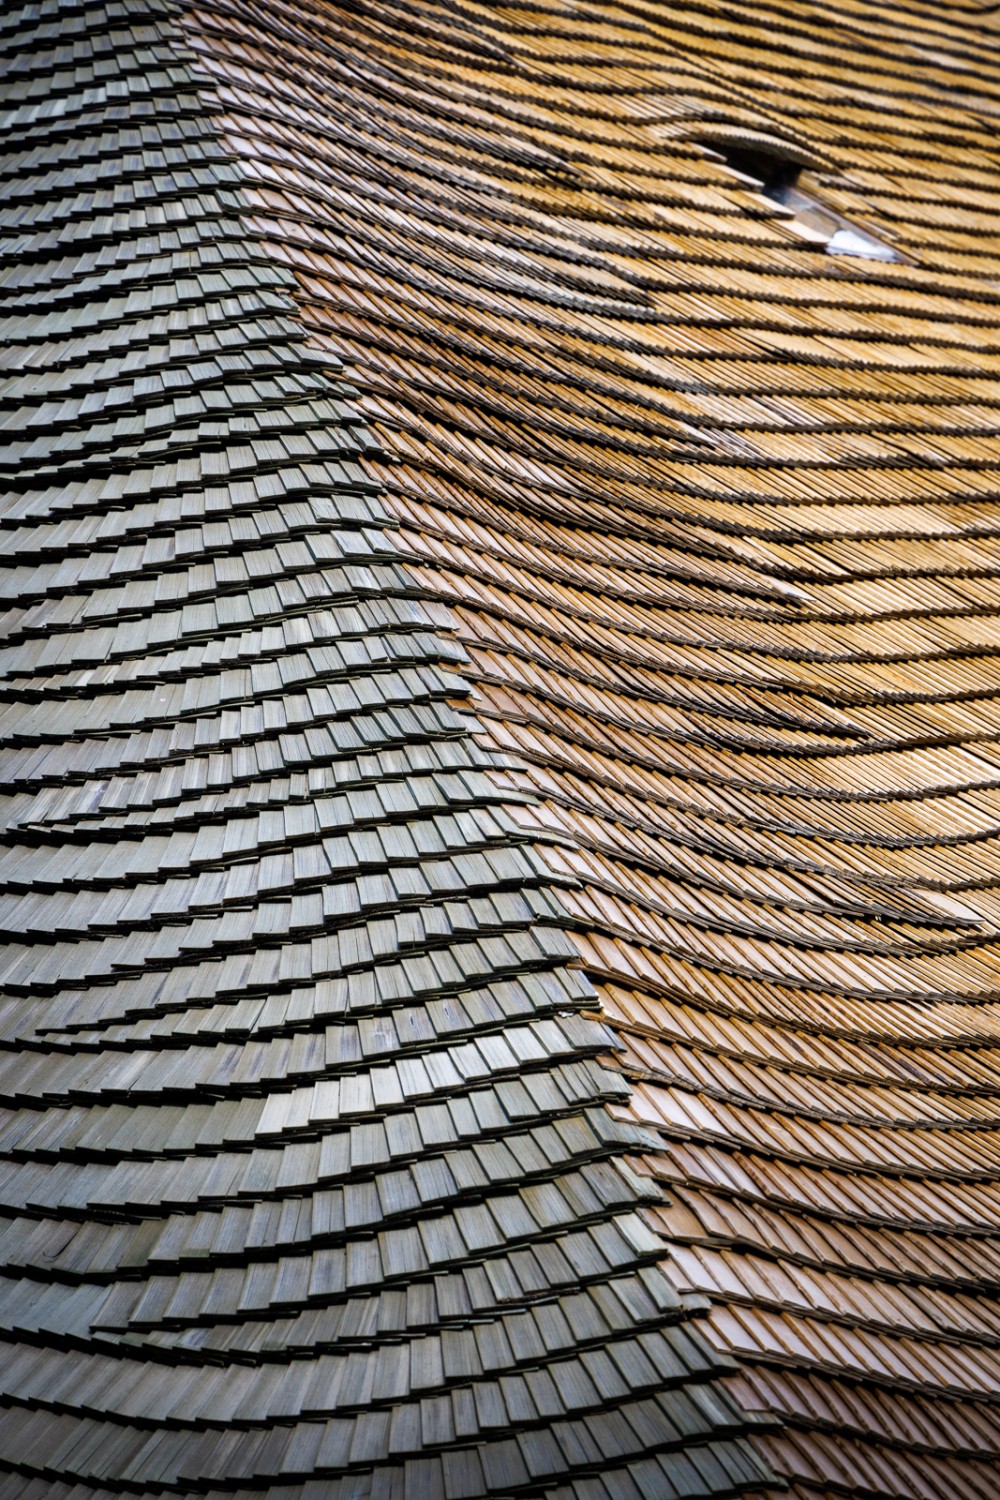 Schindeldächer &#8210; eine lebendige Tradition im Greyerzerland. Bild: Severin Nowacki